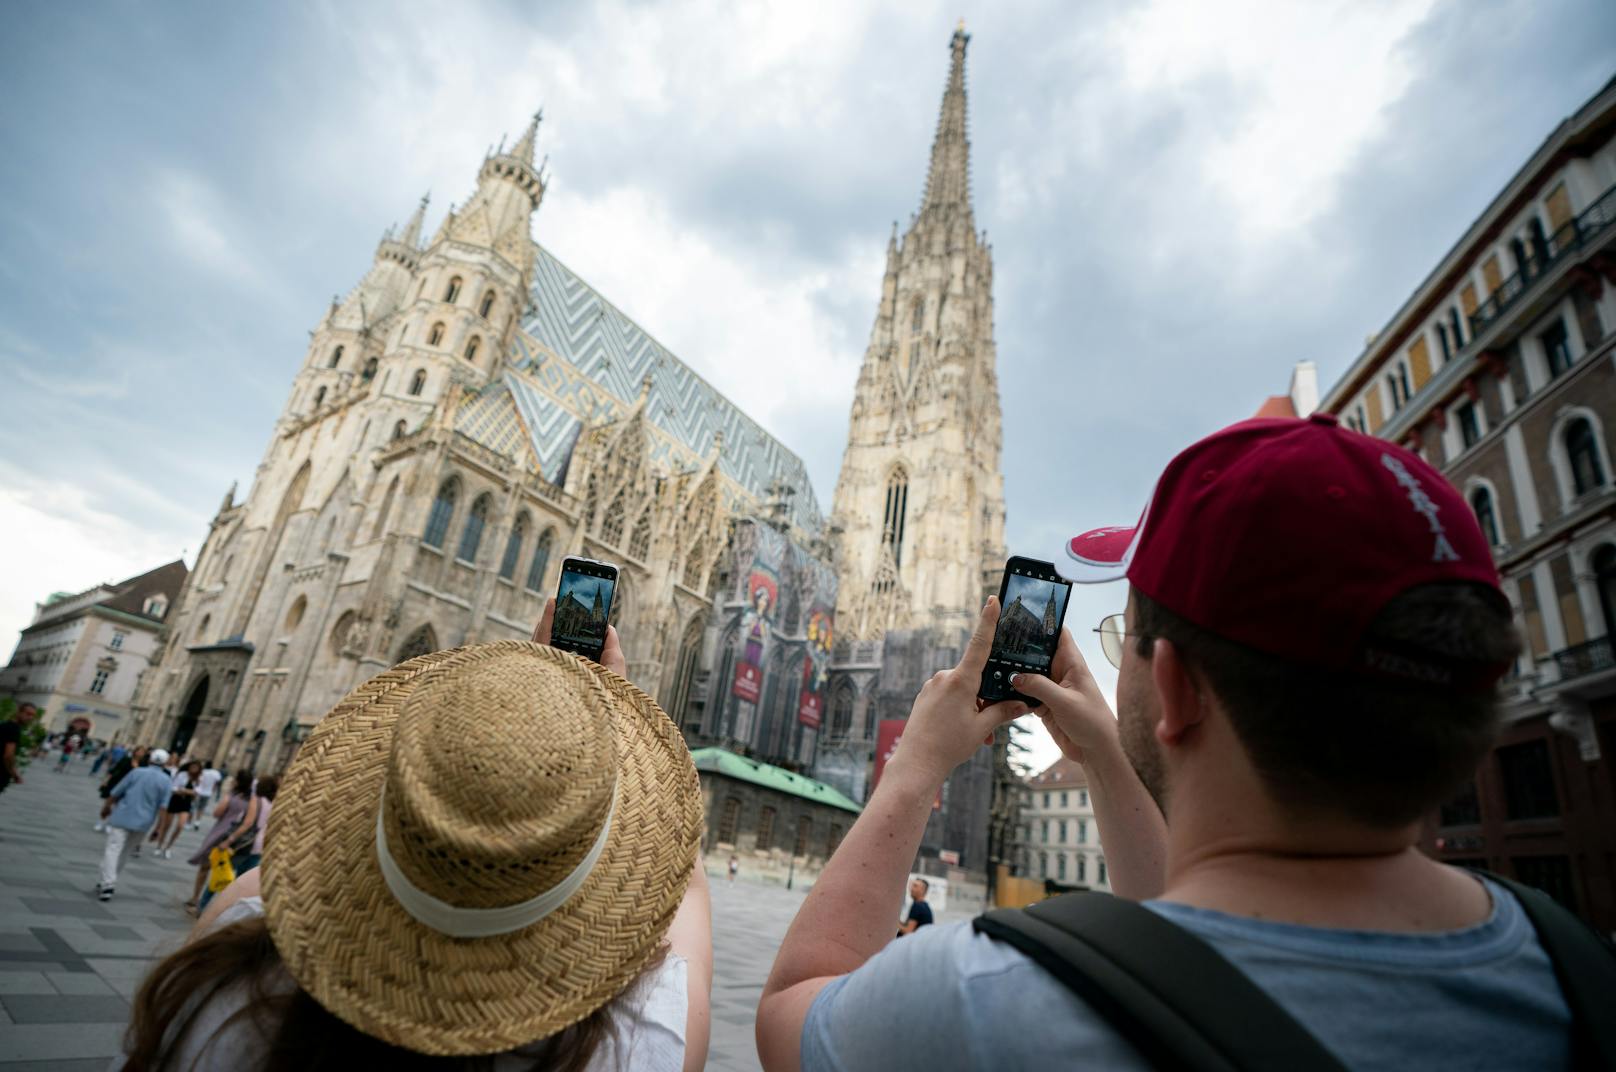 Zwei Touristen aus Deutschland fotografieren am 26. Juli 2020 den Stephansdom in Wien. In Zukunft wohl ein seltener Anblick